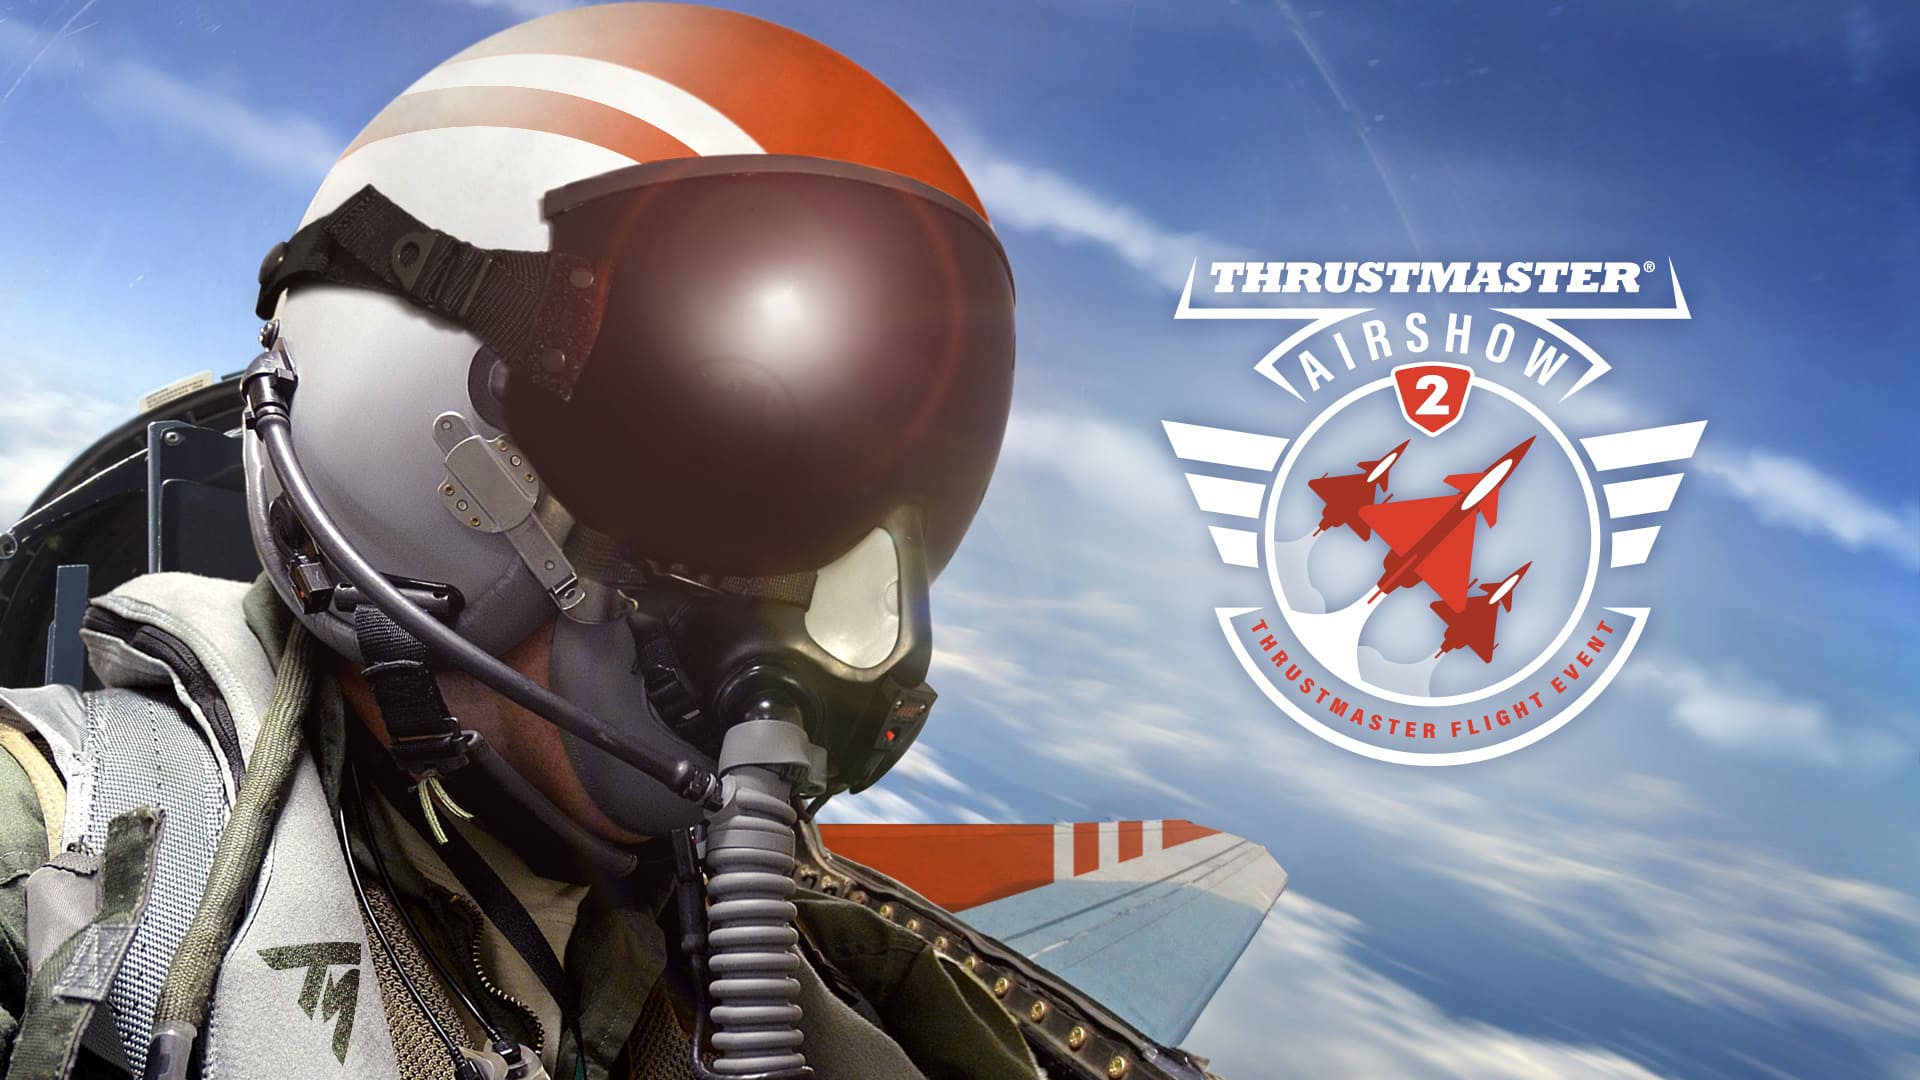 Erlebe die Thrustmaster Airshow 2 live